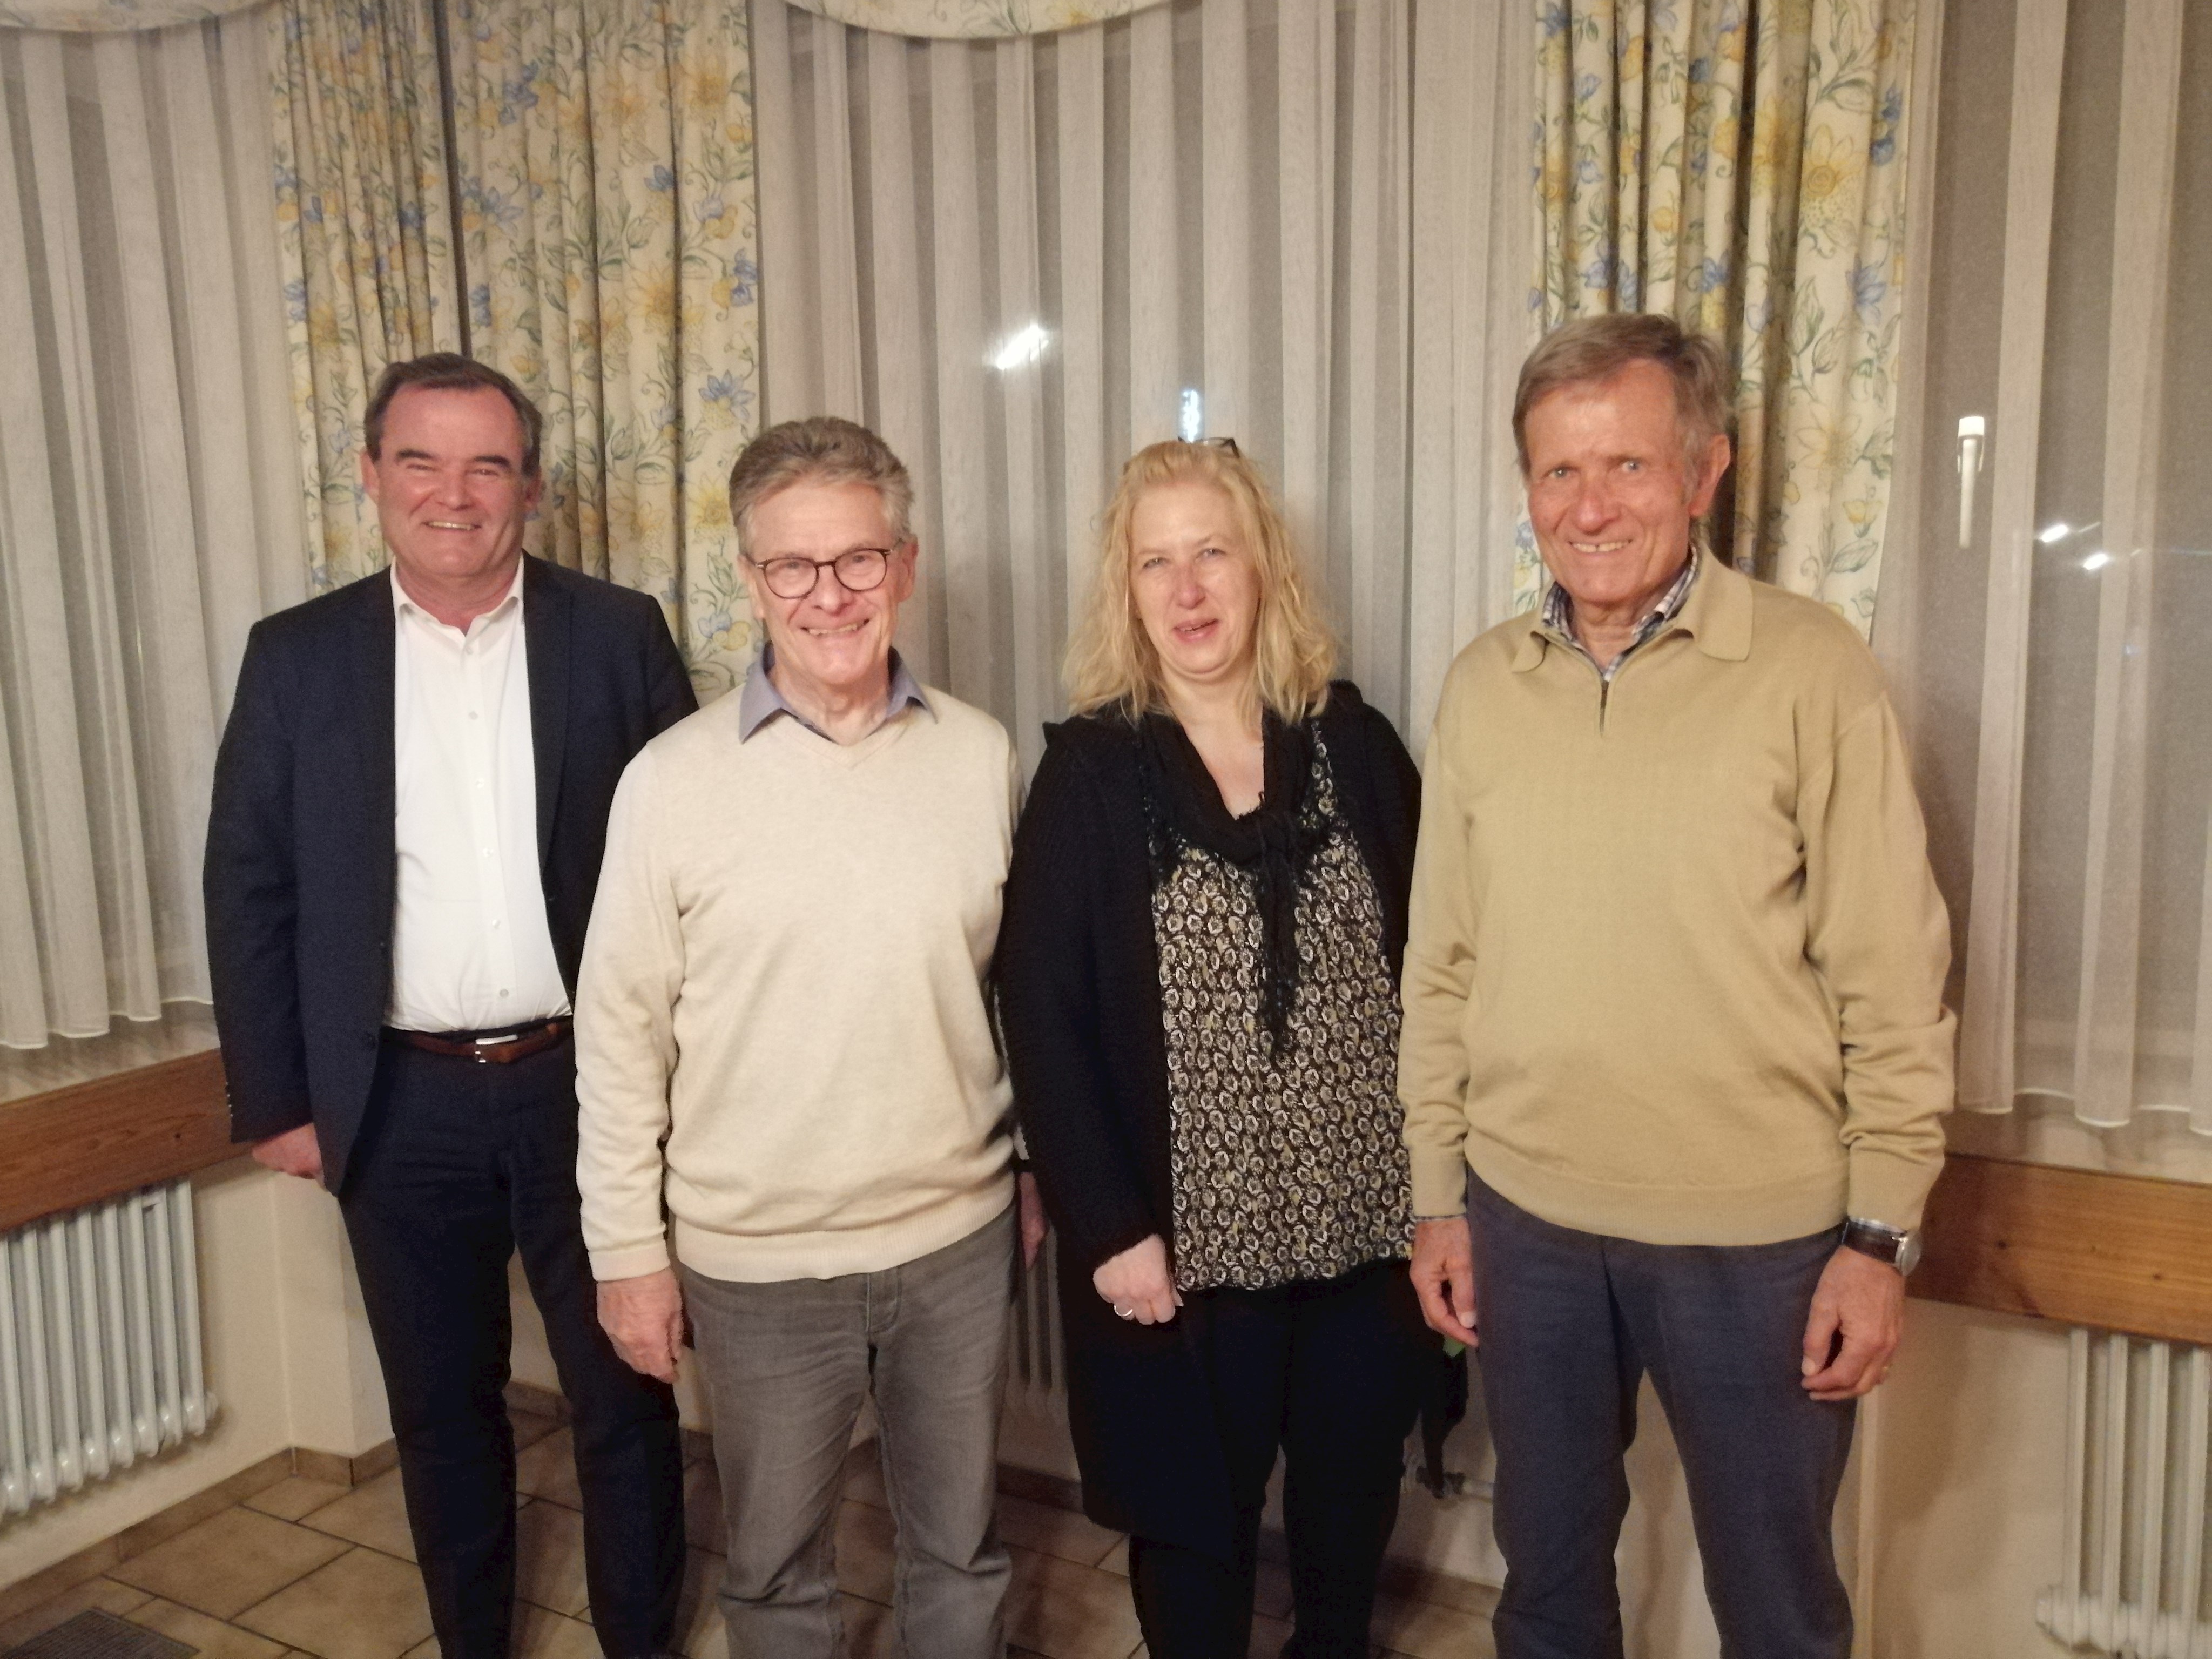 v.l.n.r.: Landrat Albert Gürtner, Florian Weiß, Gerlinde Reisner und Richard Schnell